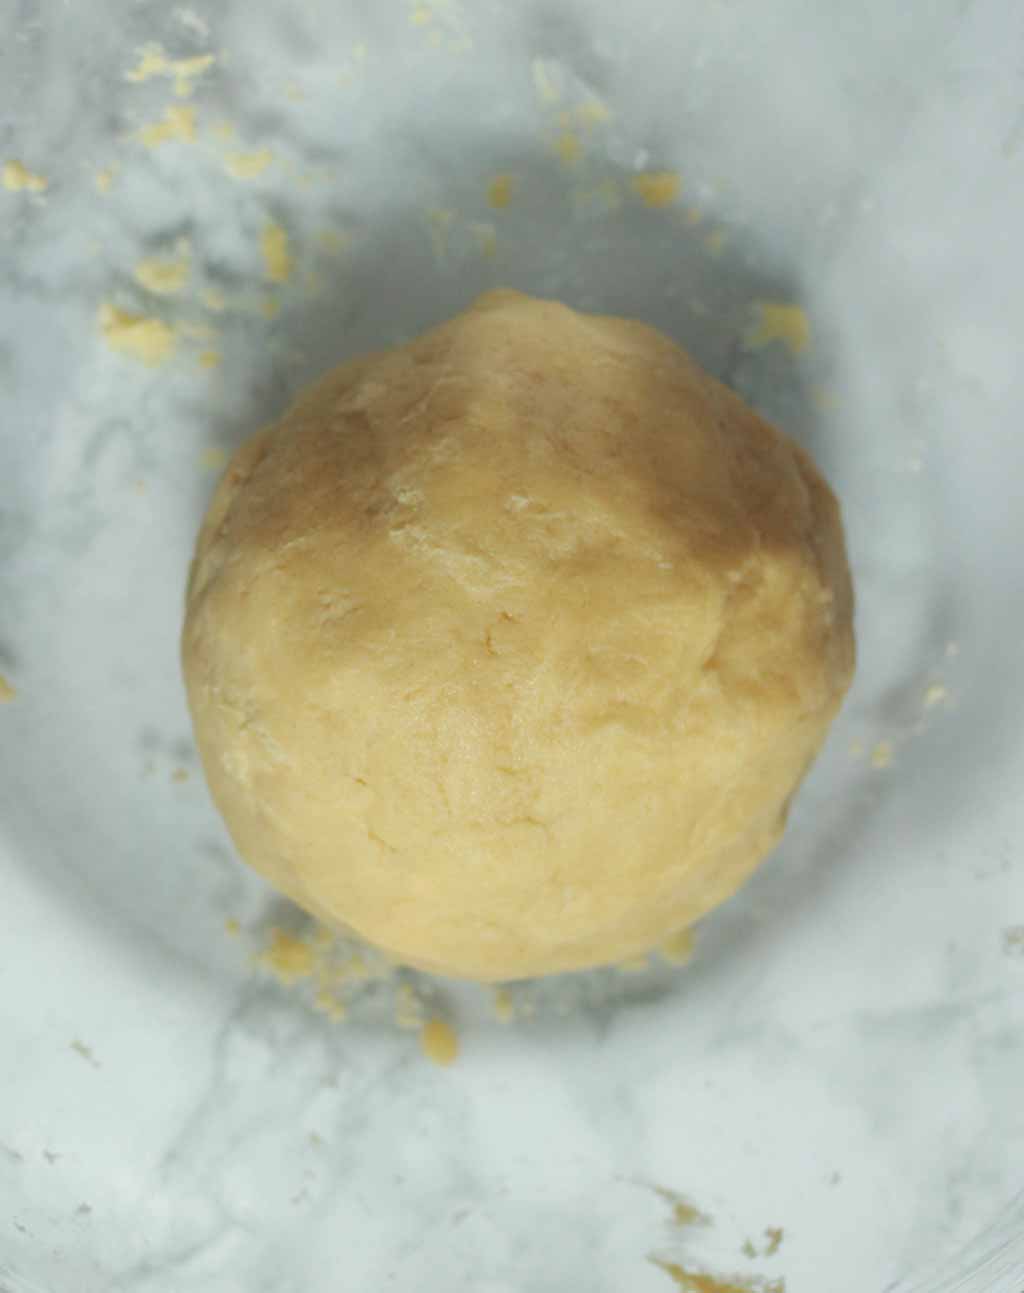 Ball Of Shortbread Dough In A Bowl